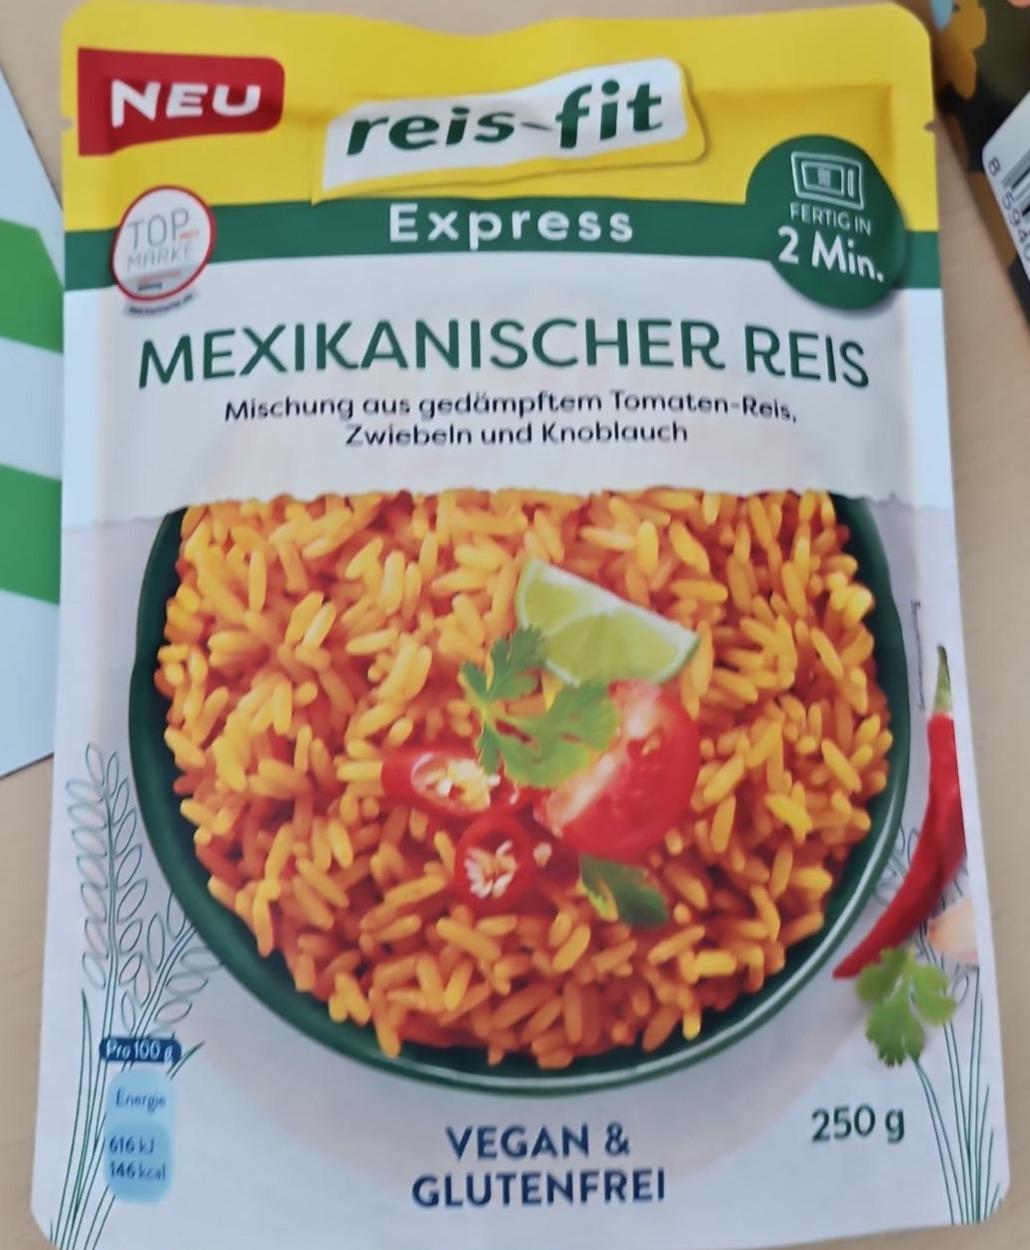 Fotografie - Mexikanischer Reis Express reis-fit